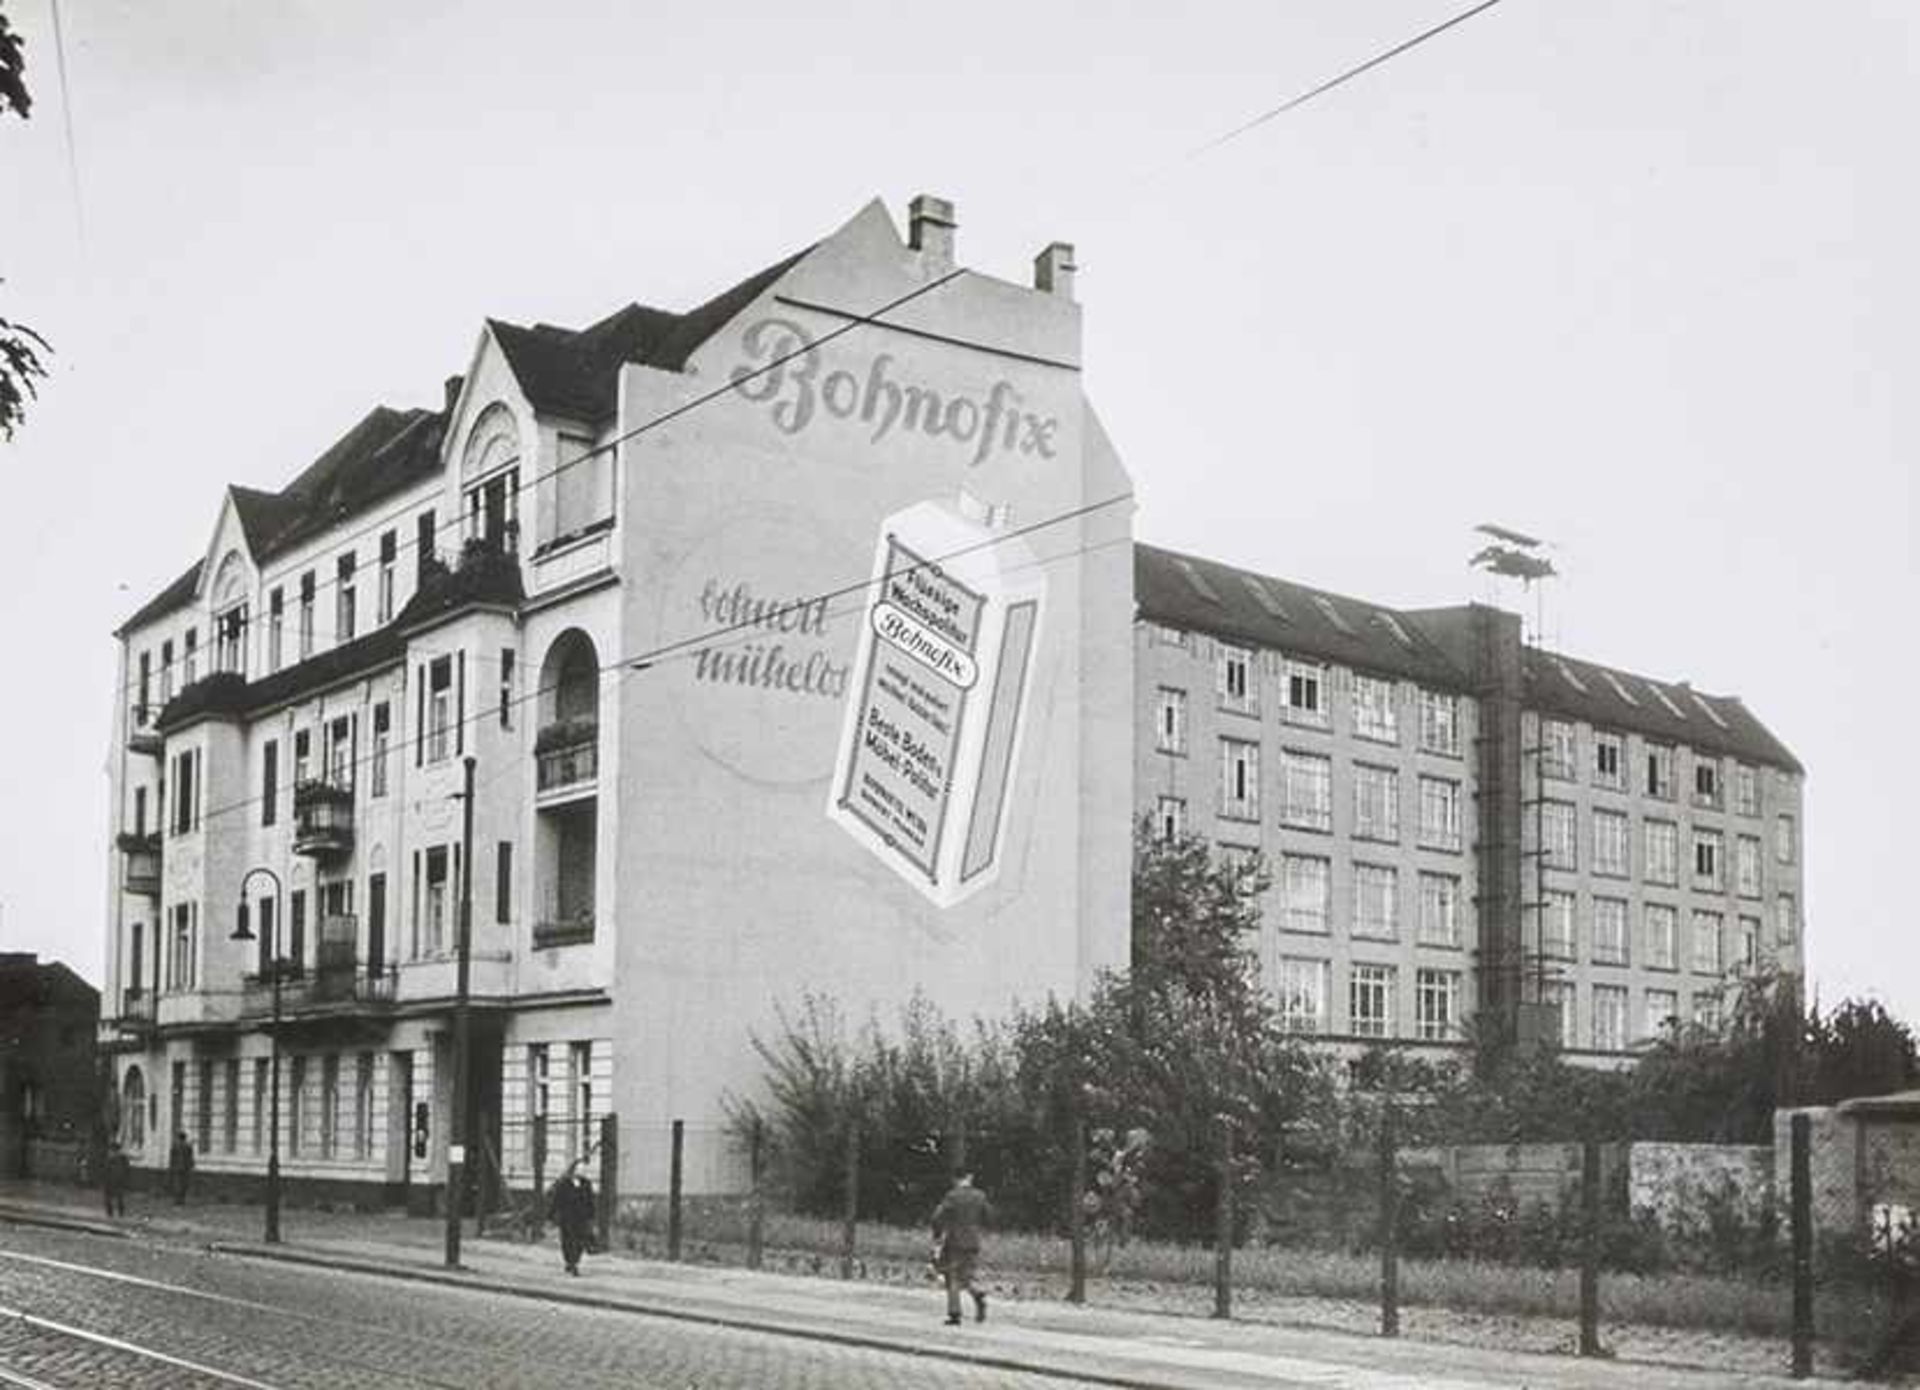 Deutschland - Berlin - - 50 Jahre Bohnofix 1893-1943. Album mit 26 montierten Original-